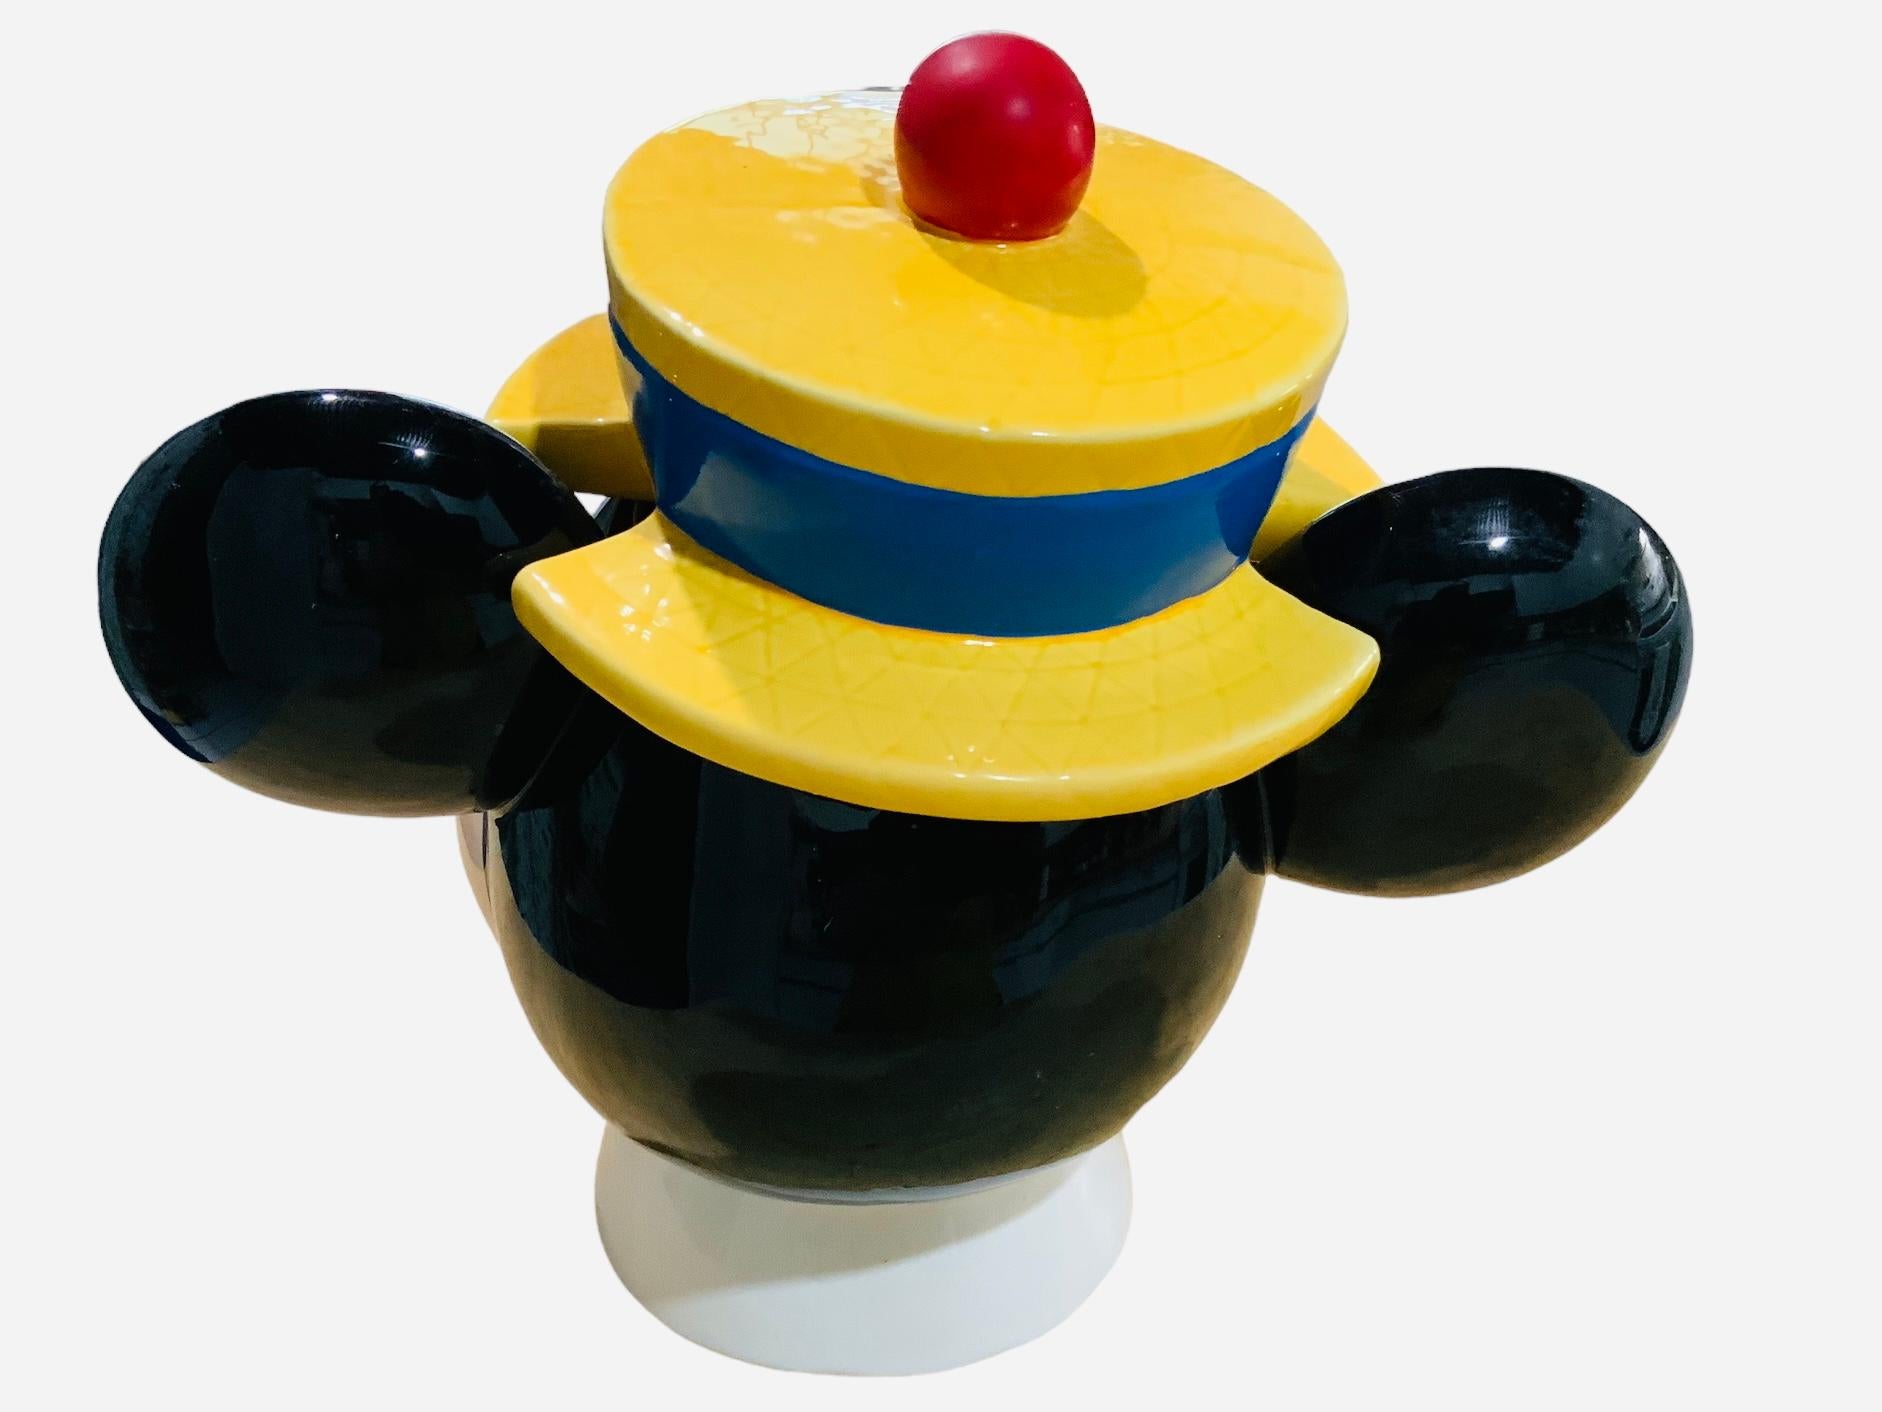 Dies ist ein Walt Disney, Mickey Mouse Head Cookie Jar. Es zeigt eine handbemalte glasierte Keramik-Keksdose in Form eines Mickey Mouse-Kopfes. Er trägt einen gelben Hut mit einem Band, auf dem Cookies stehen. Unterhalb des Sockels ist C Disney